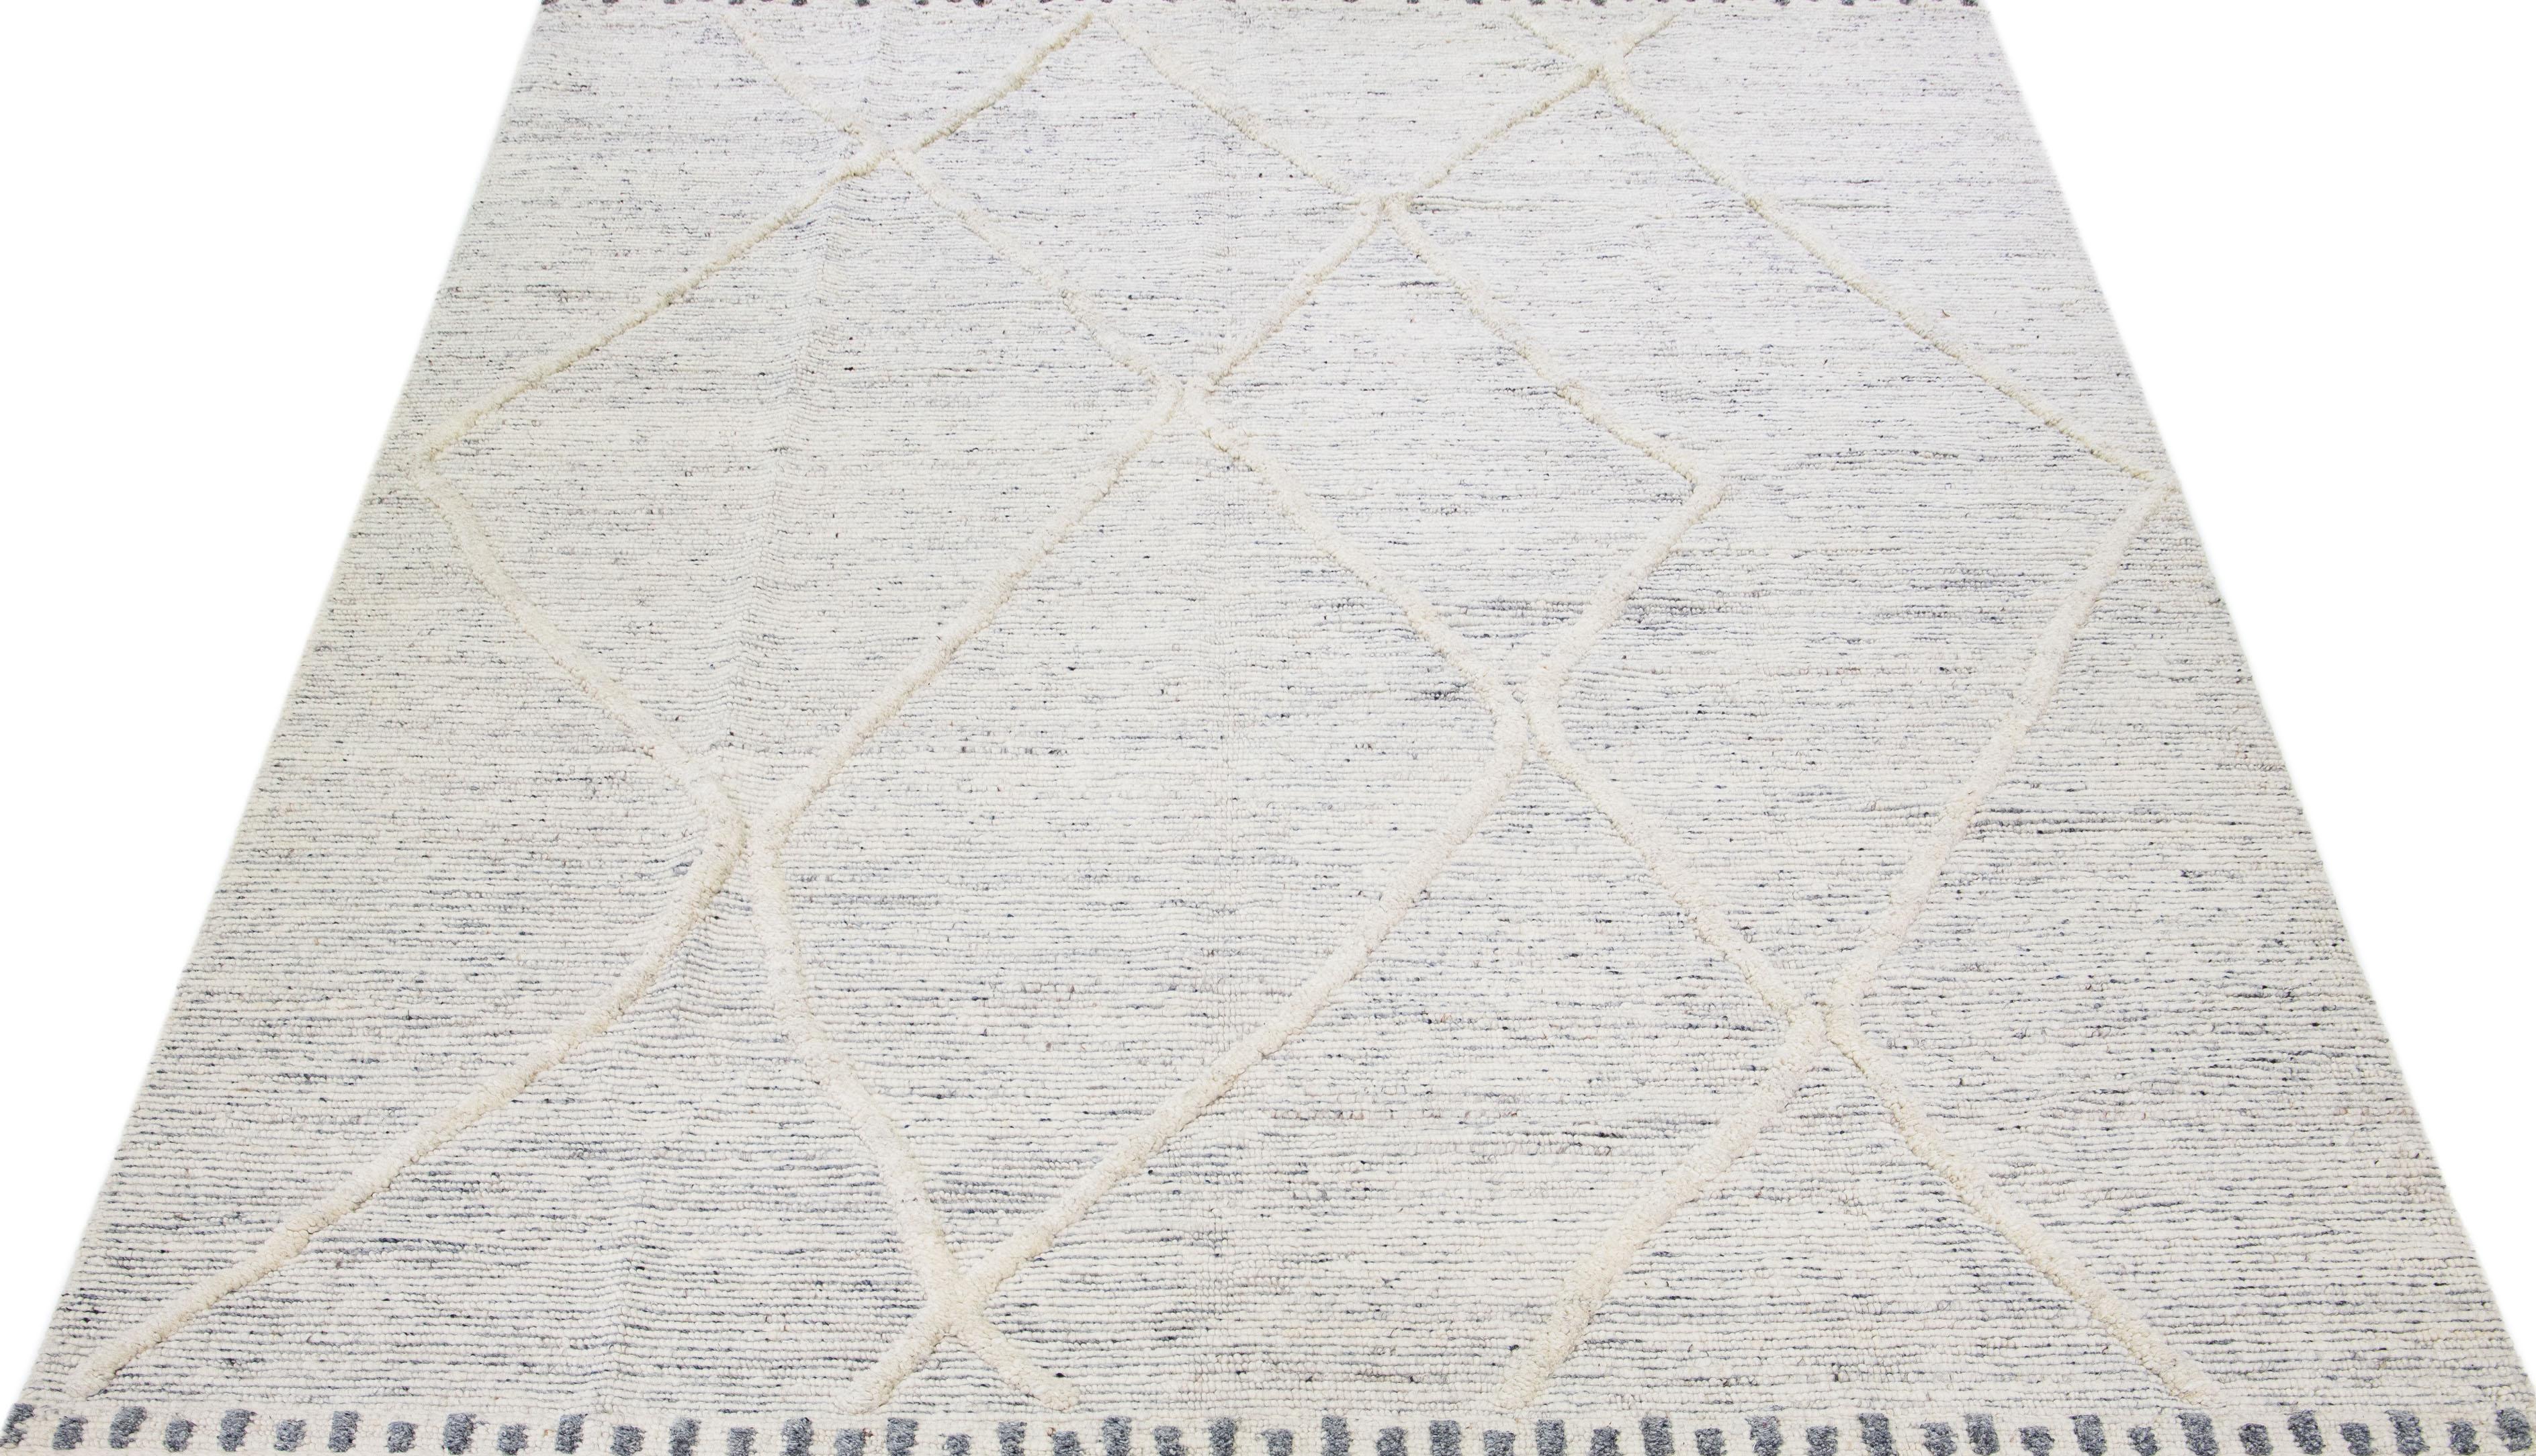 Schöner handgefertigter Wollteppich im marokkanischen Stil mit elfenbeinfarbenem Feld. Dieser moderne Teppich hat graue Akzente und ein wunderschönes geometrisches Boho-Motiv, das überall zu sehen ist.

Dieser Teppich misst: 10'2